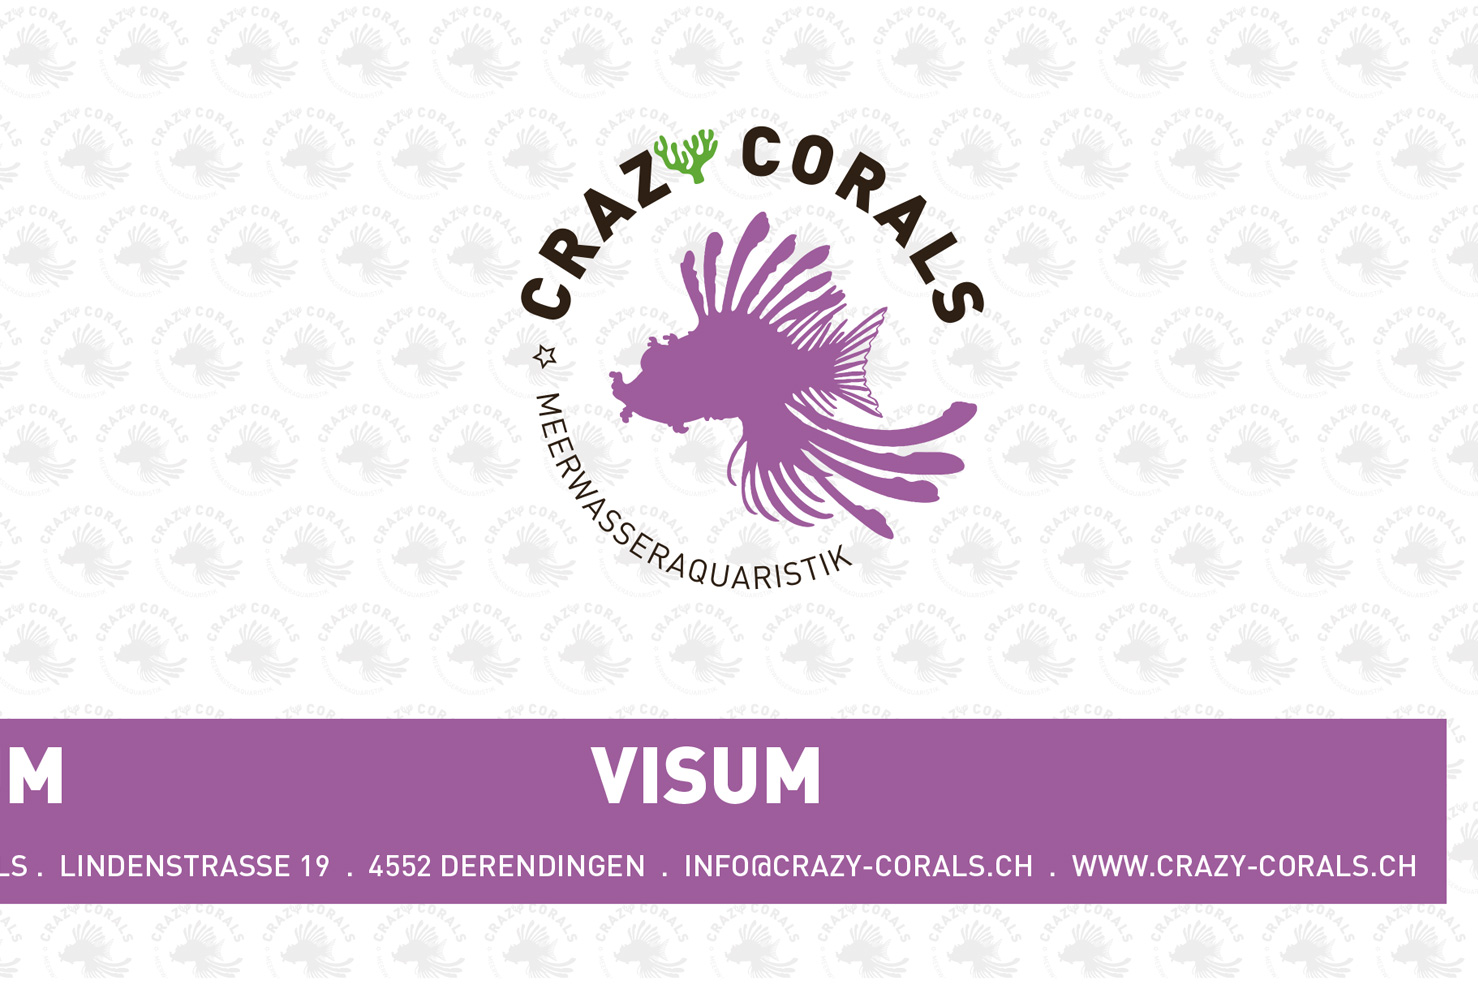 Bild 3 vom Crazy Corals Grafikdesign